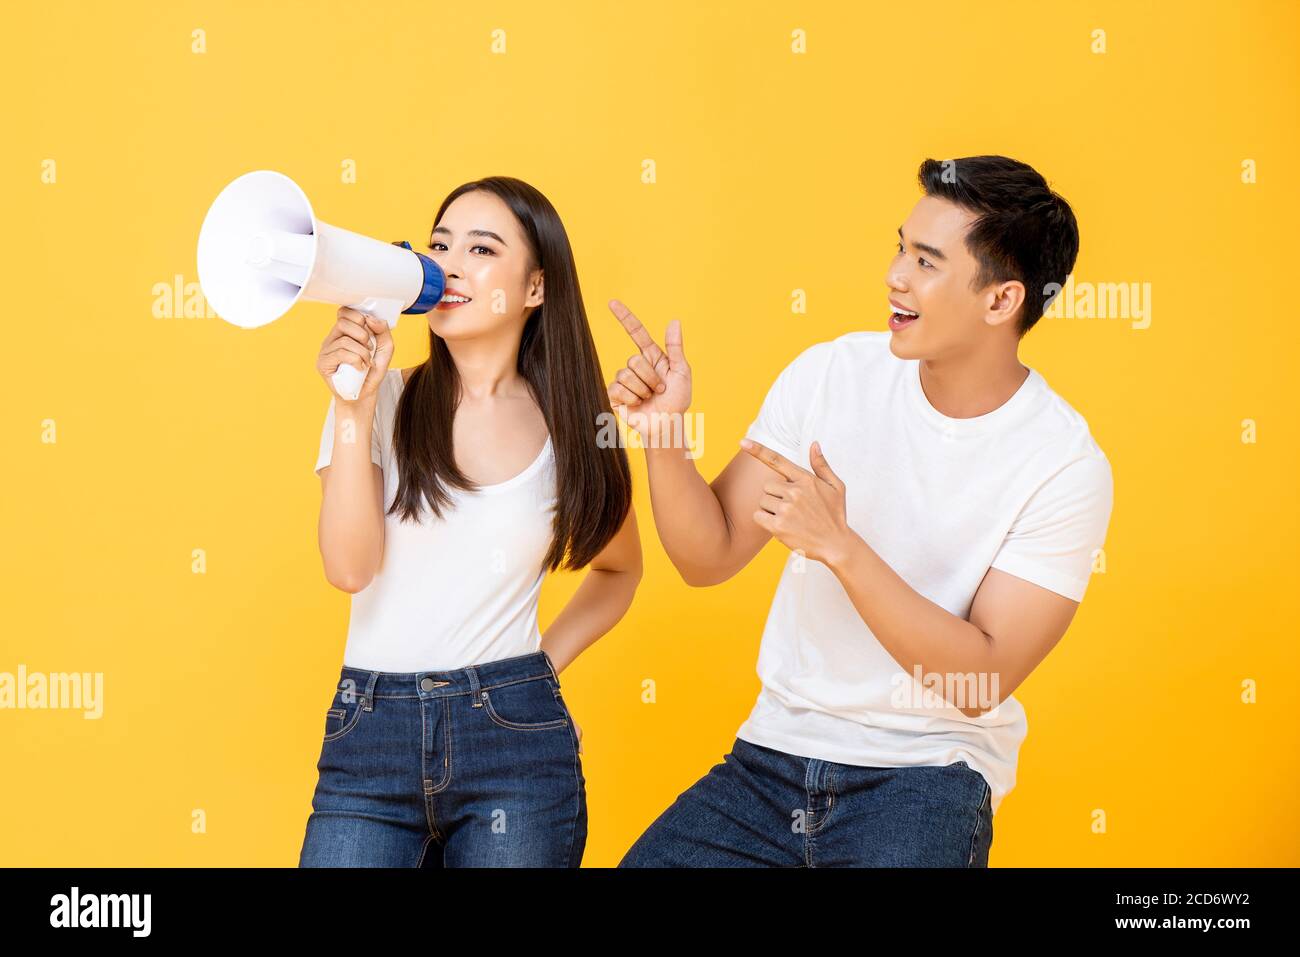 Fun Porträt von glücklich junge asiatische Paar, die Ankündigung in Isolierter Studio-gelber Hintergrund Stockfoto